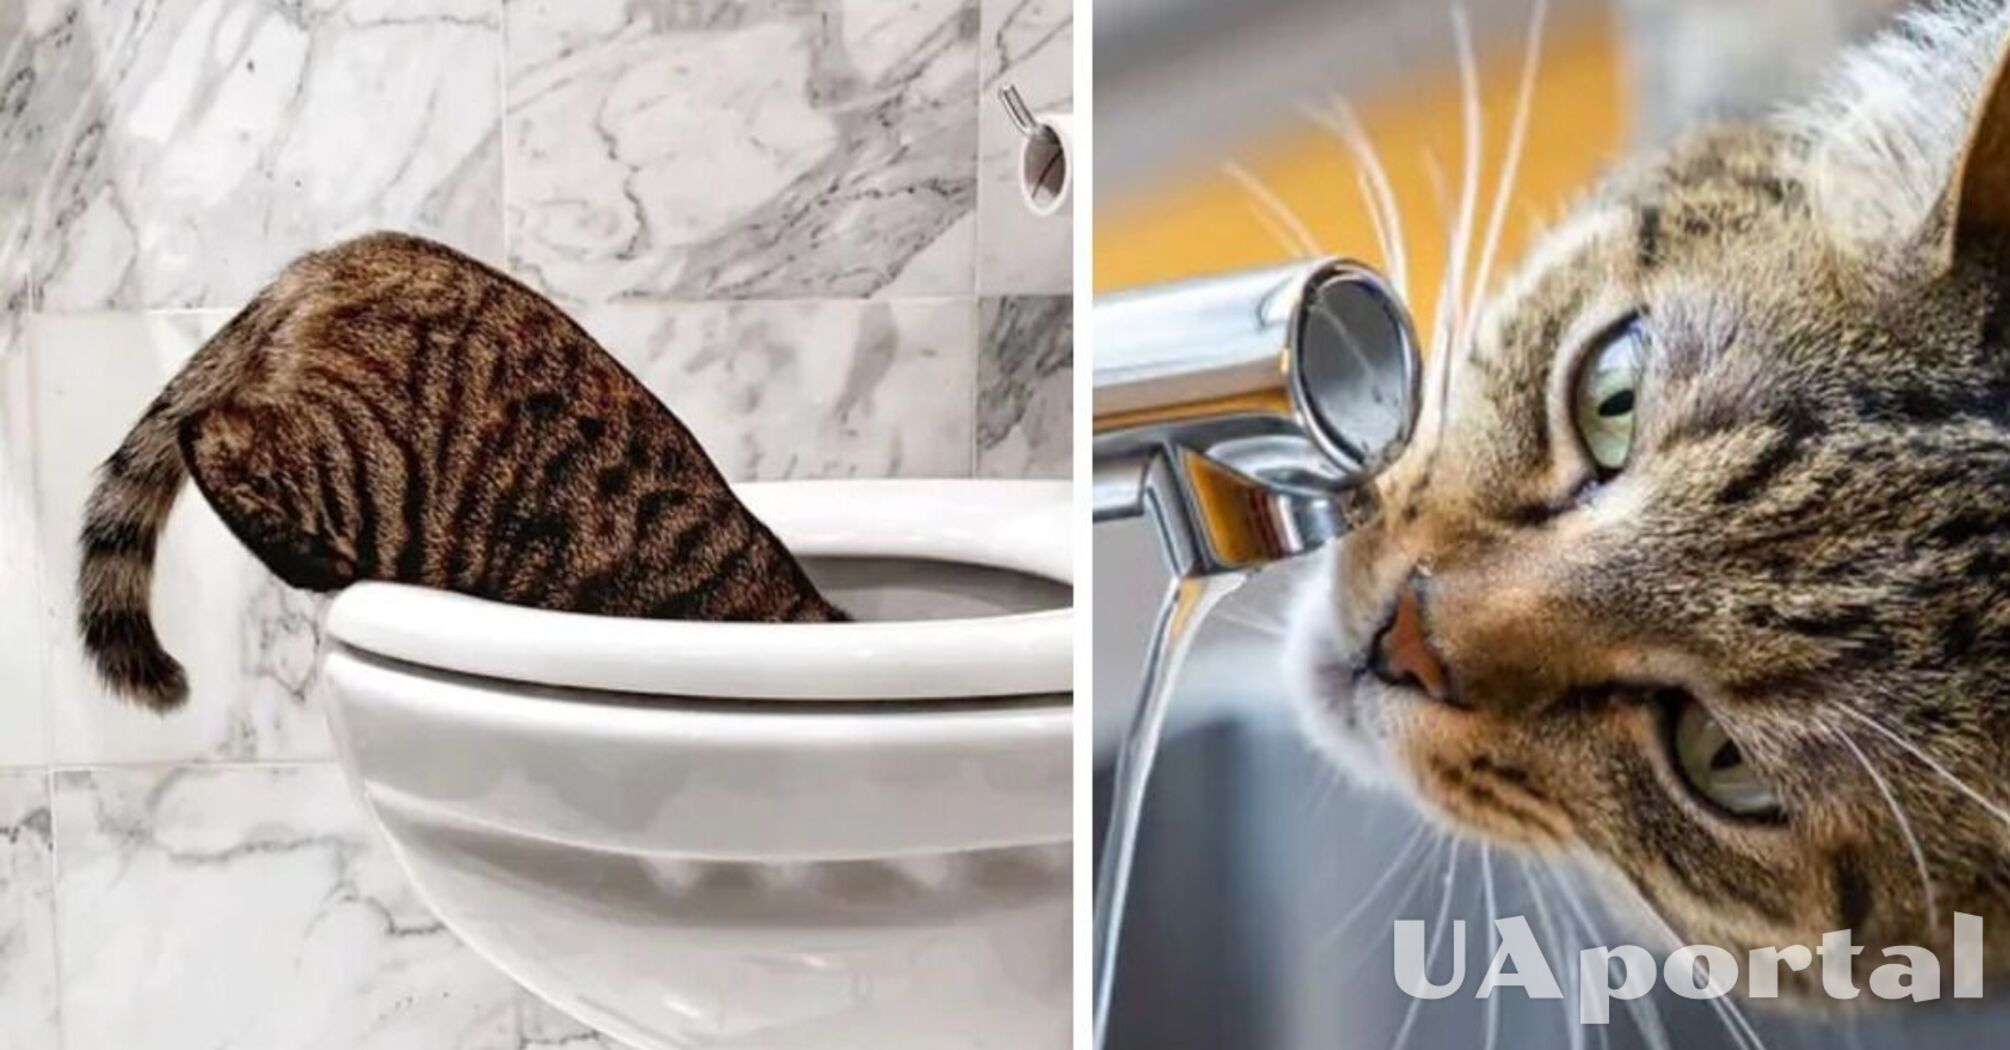 Фахівці пояснили, чому коти не гидують пити воду з унітаза, а воду з миски ігнорують